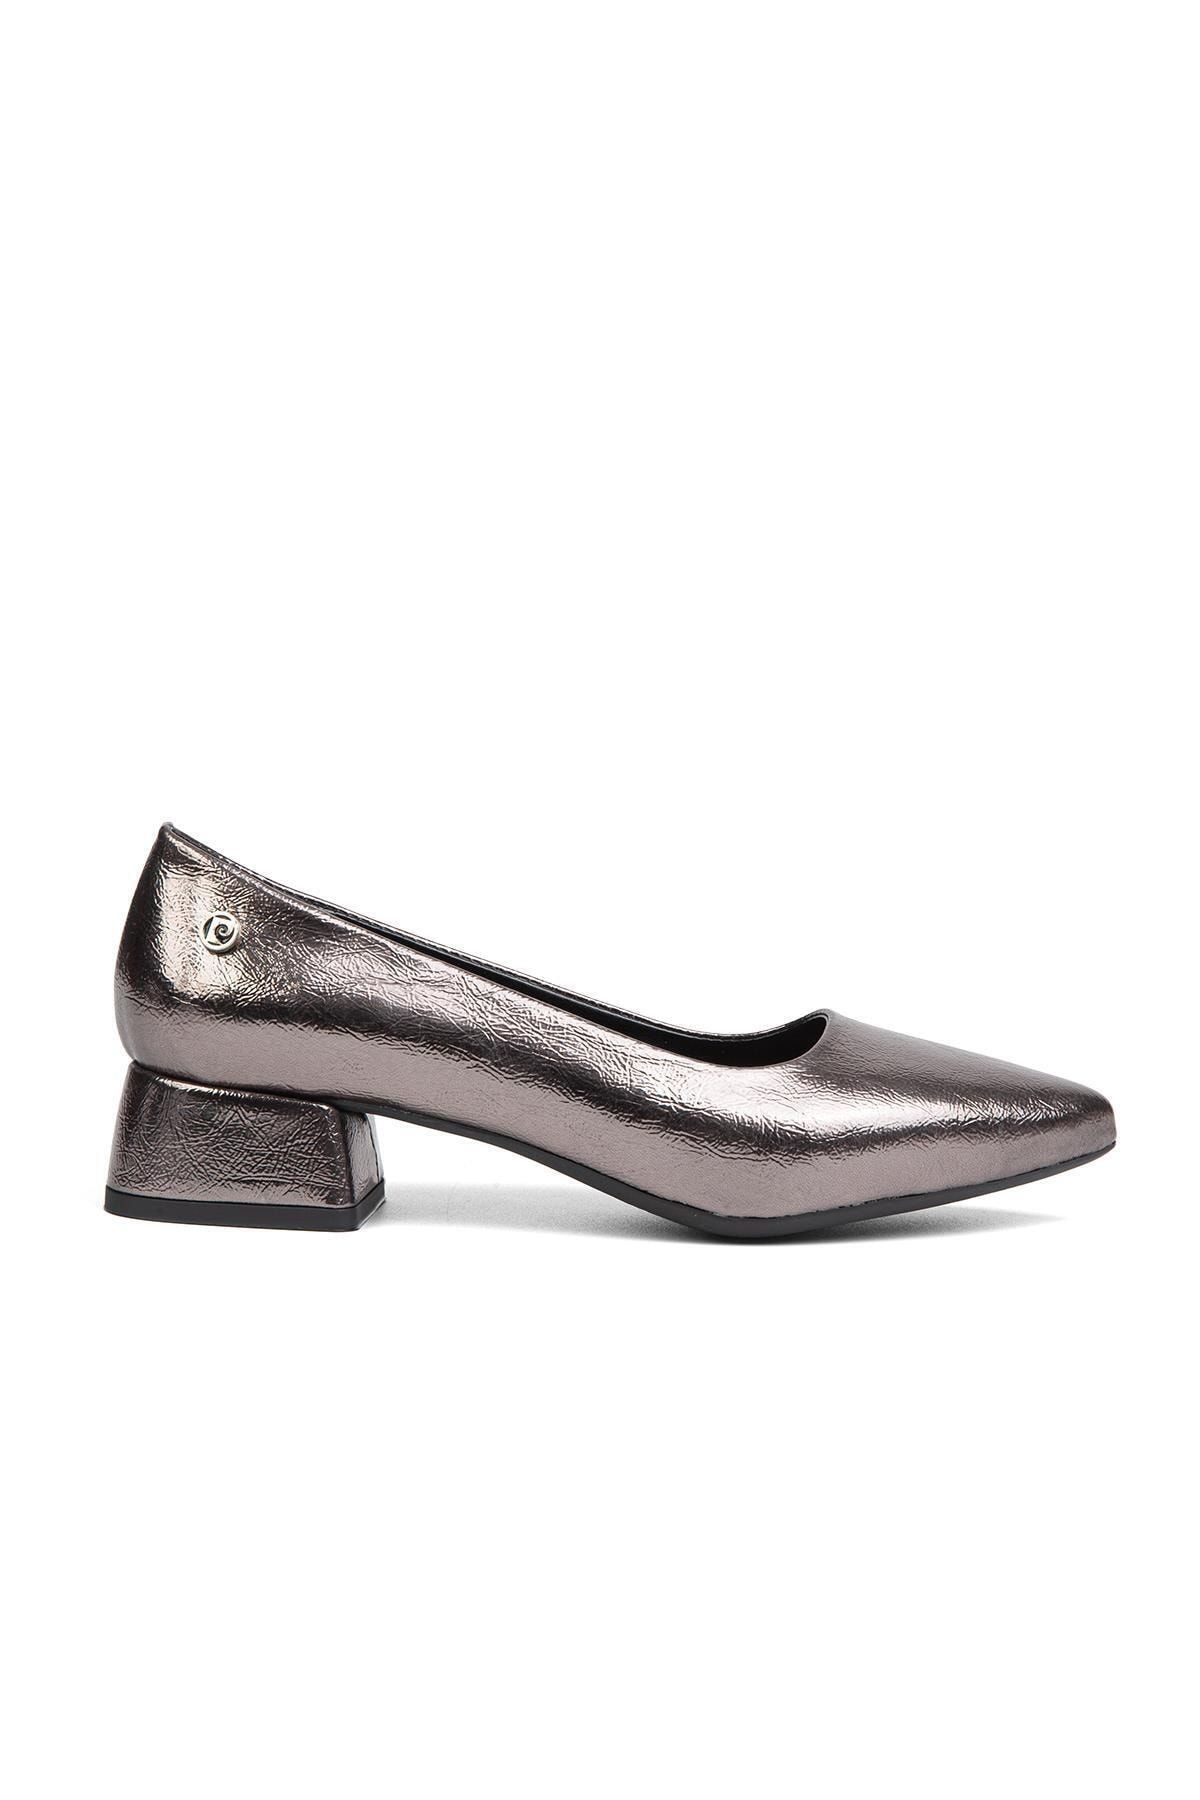 Pierre Cardin ® | PC-52009-3592 Platin Kırısık - Kadın Topuklu Ayakkabı